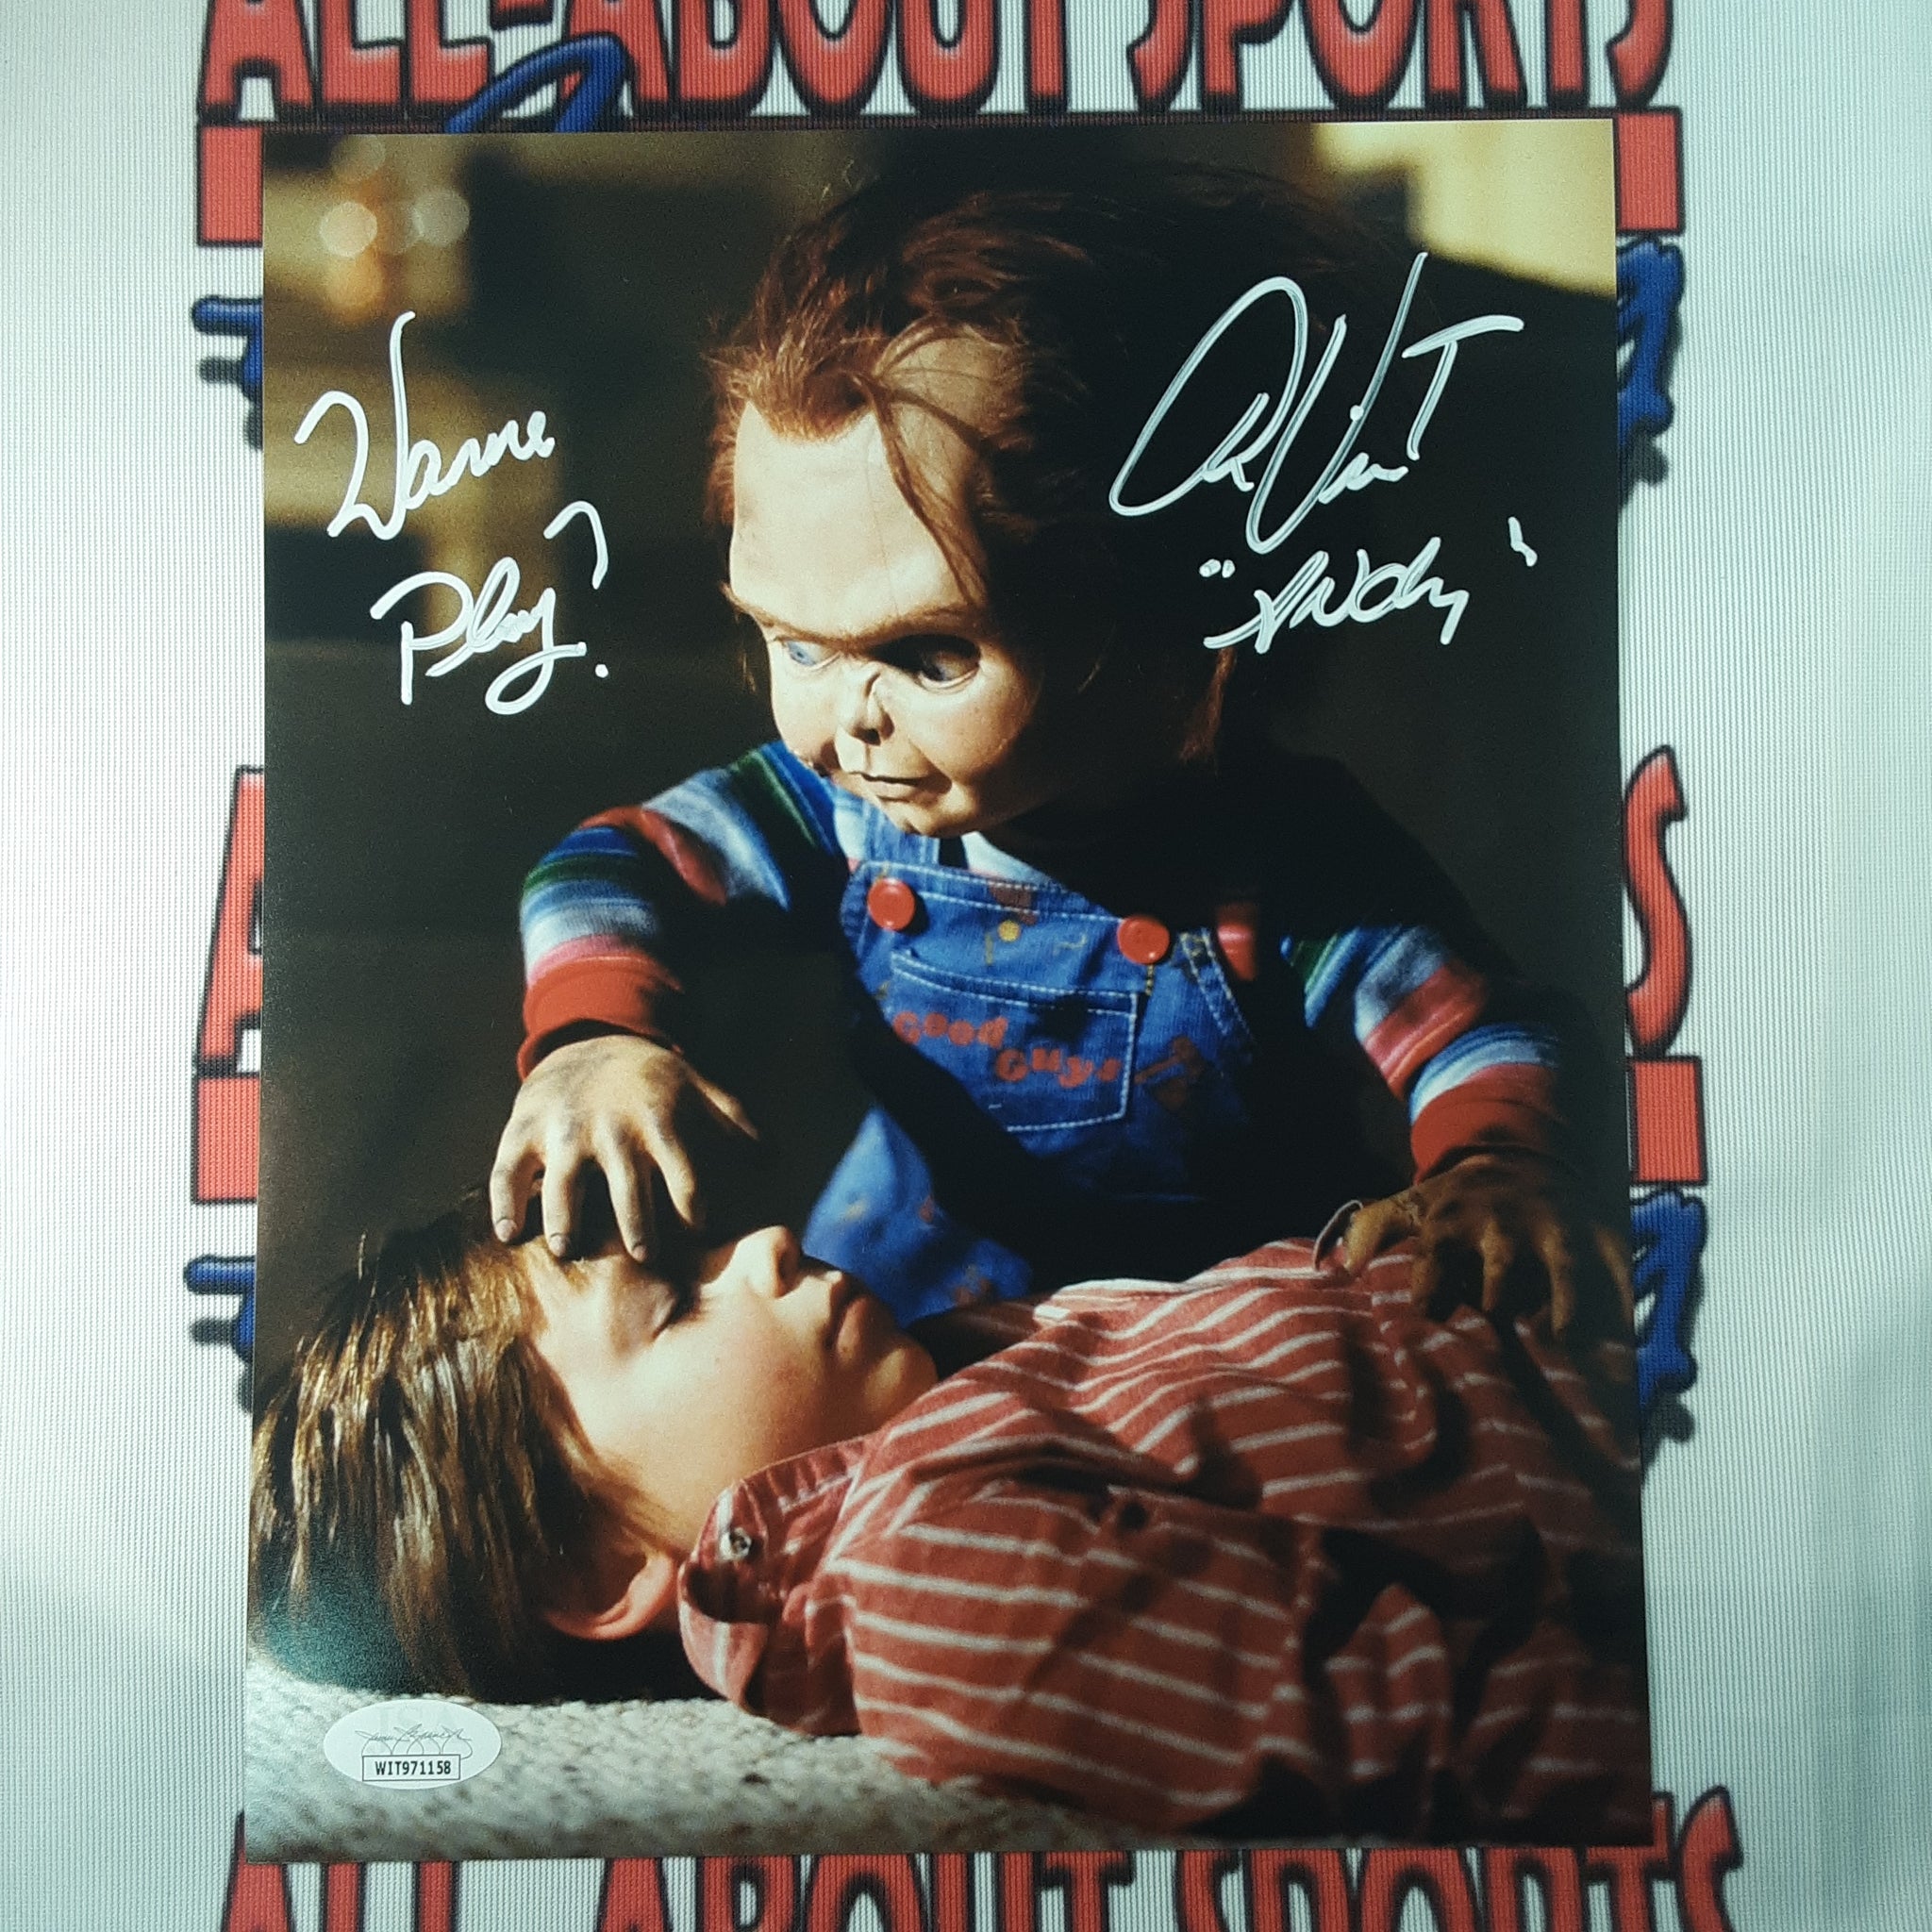 Alex Vincent Authentic Signed 8x10 Photo W/Inscription Autographed JSA.